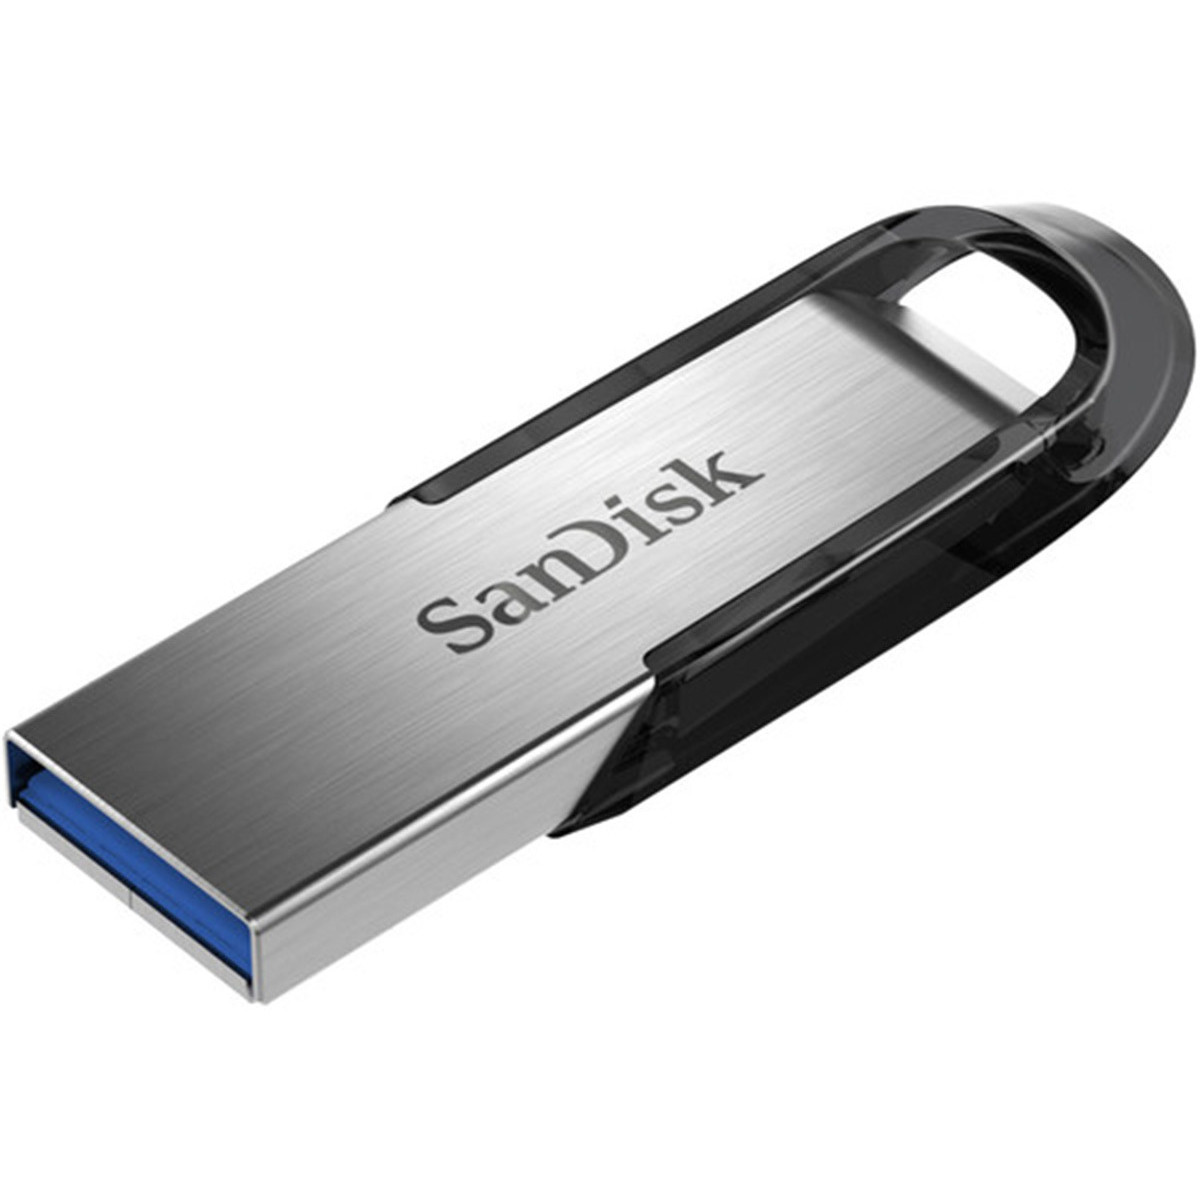 16Go Clé USB-Sandisk 3.0